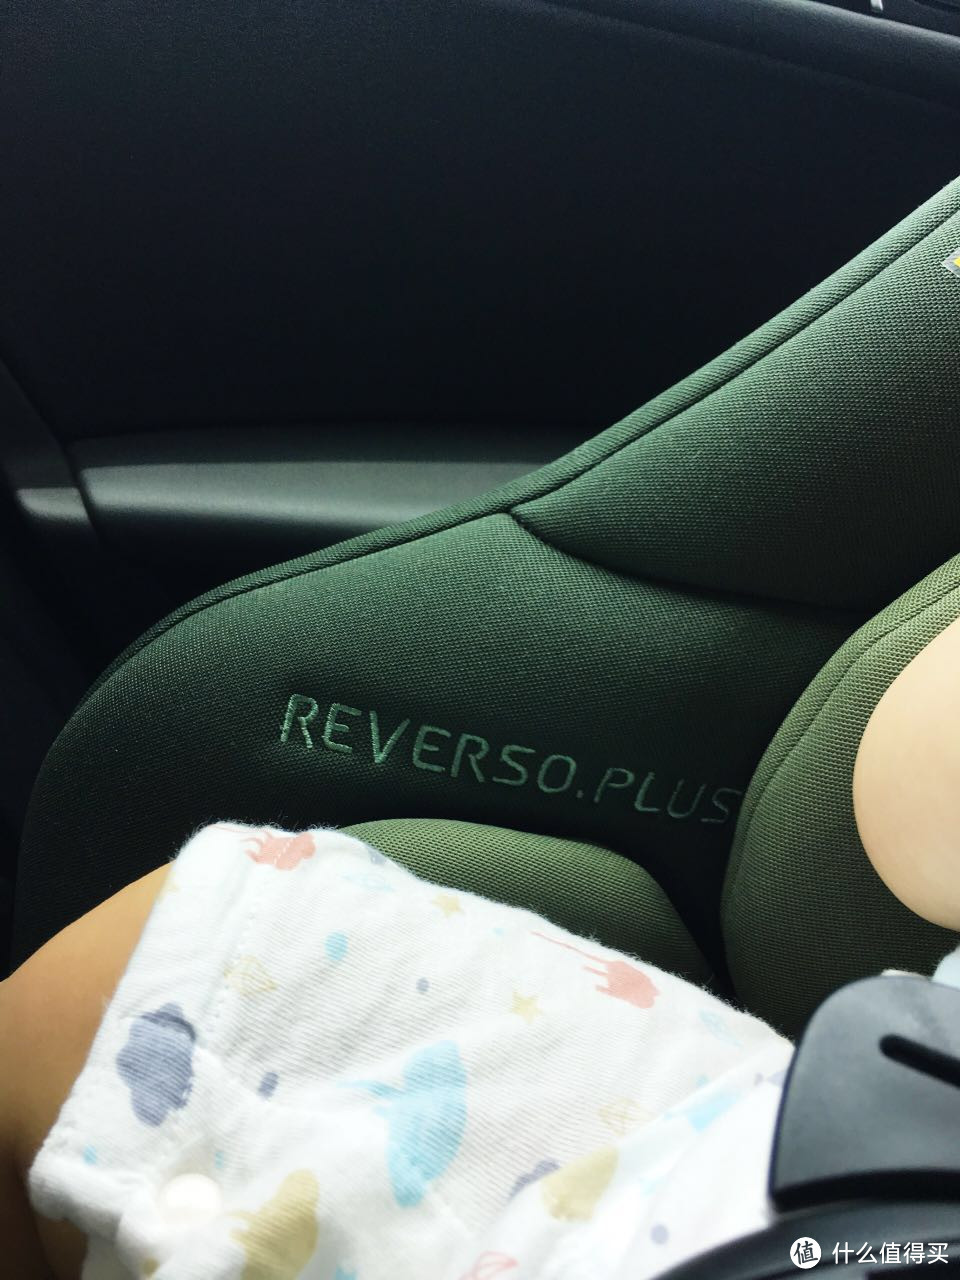 #原创新人# 给娃的第一个儿童节礼物 — Concord Reverso Plus 座椅 开箱